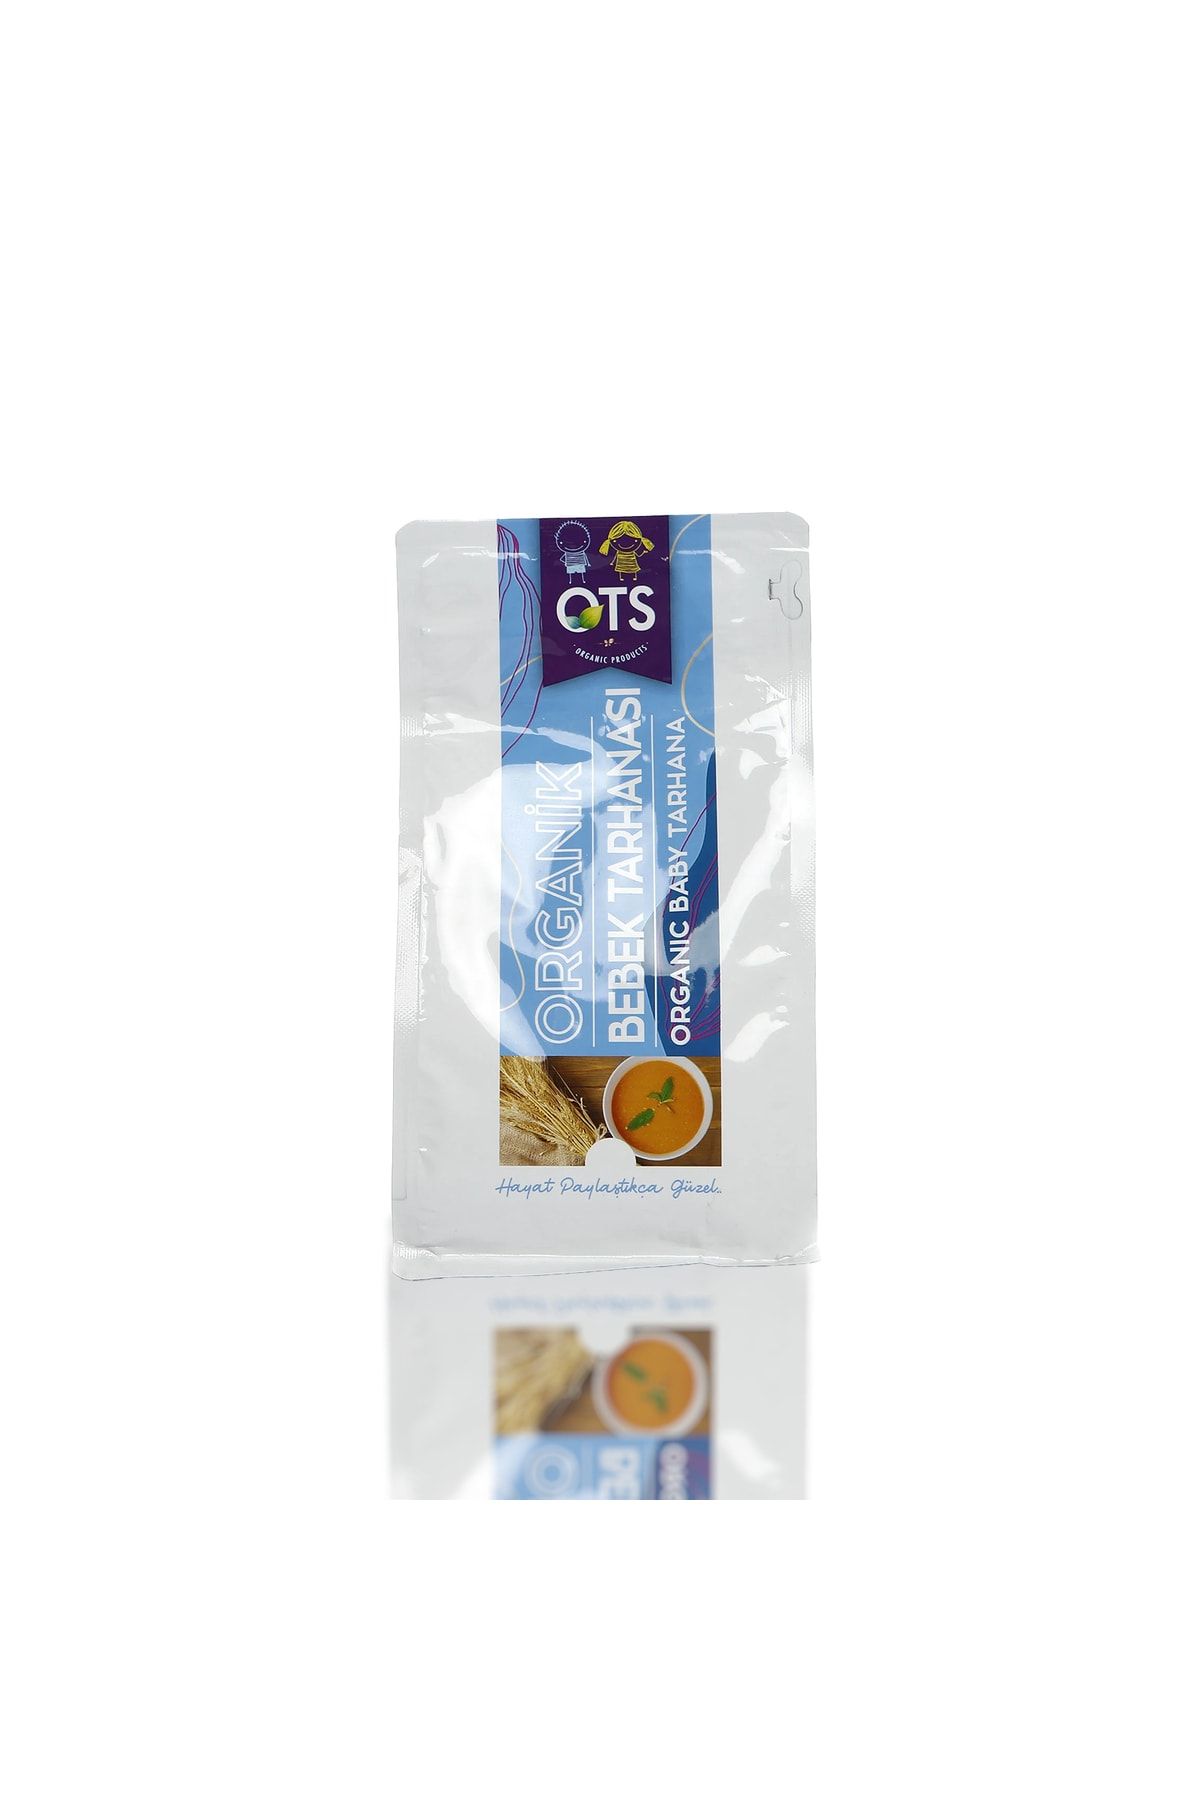 OTS Organik Organik Bebek Tarhanası (500 G)